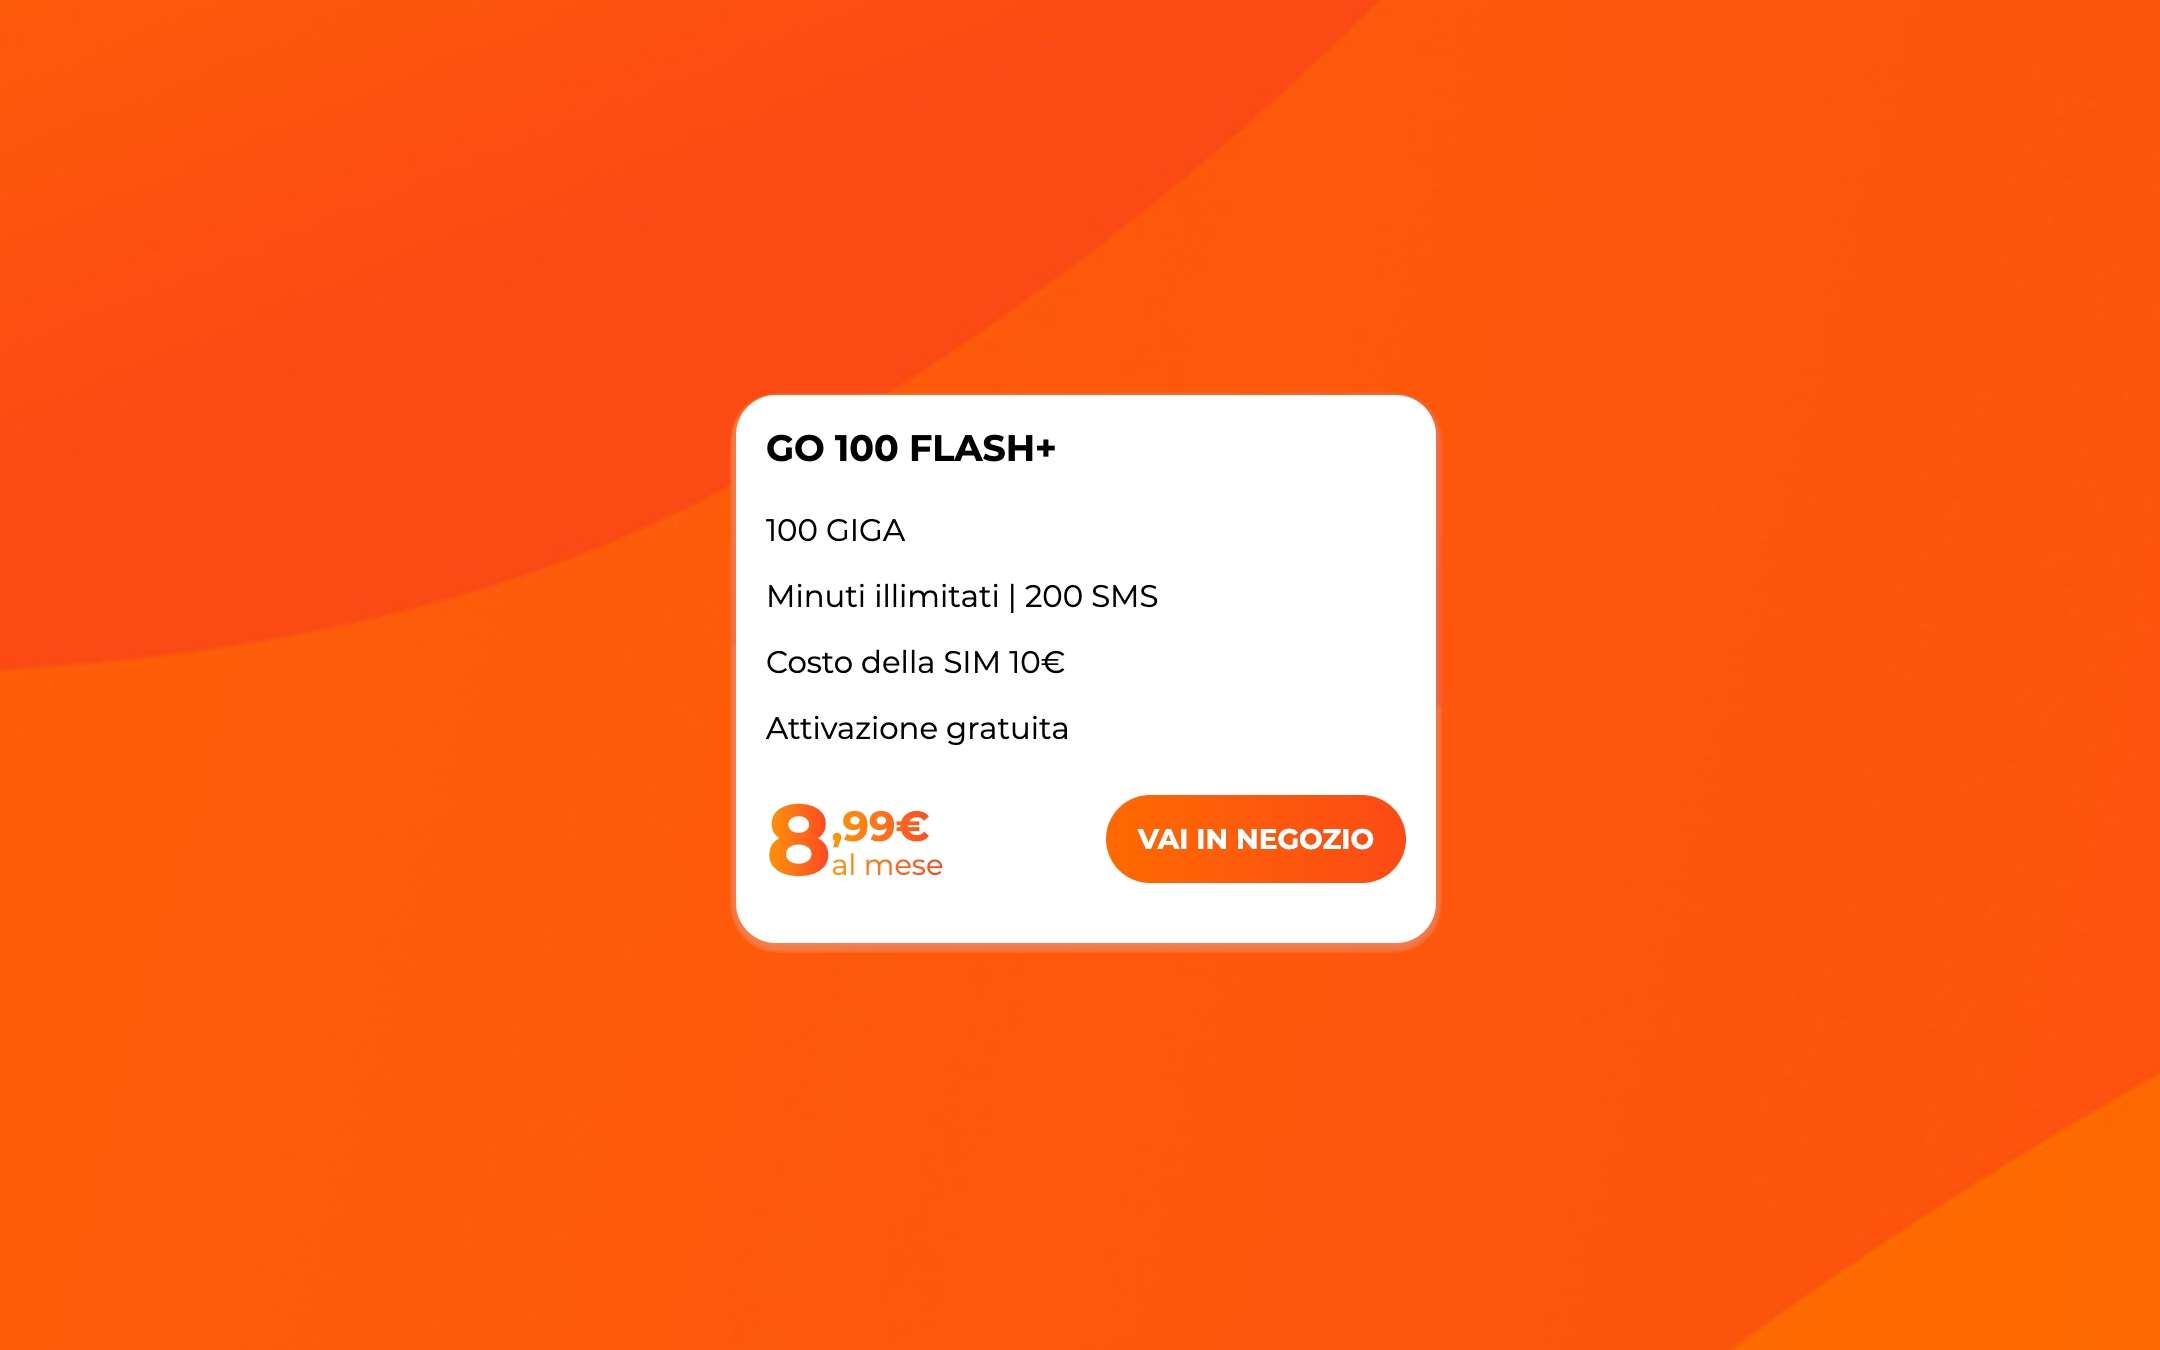 GO 100 Flash+: nuova winback di WINDTRE a 8,99€